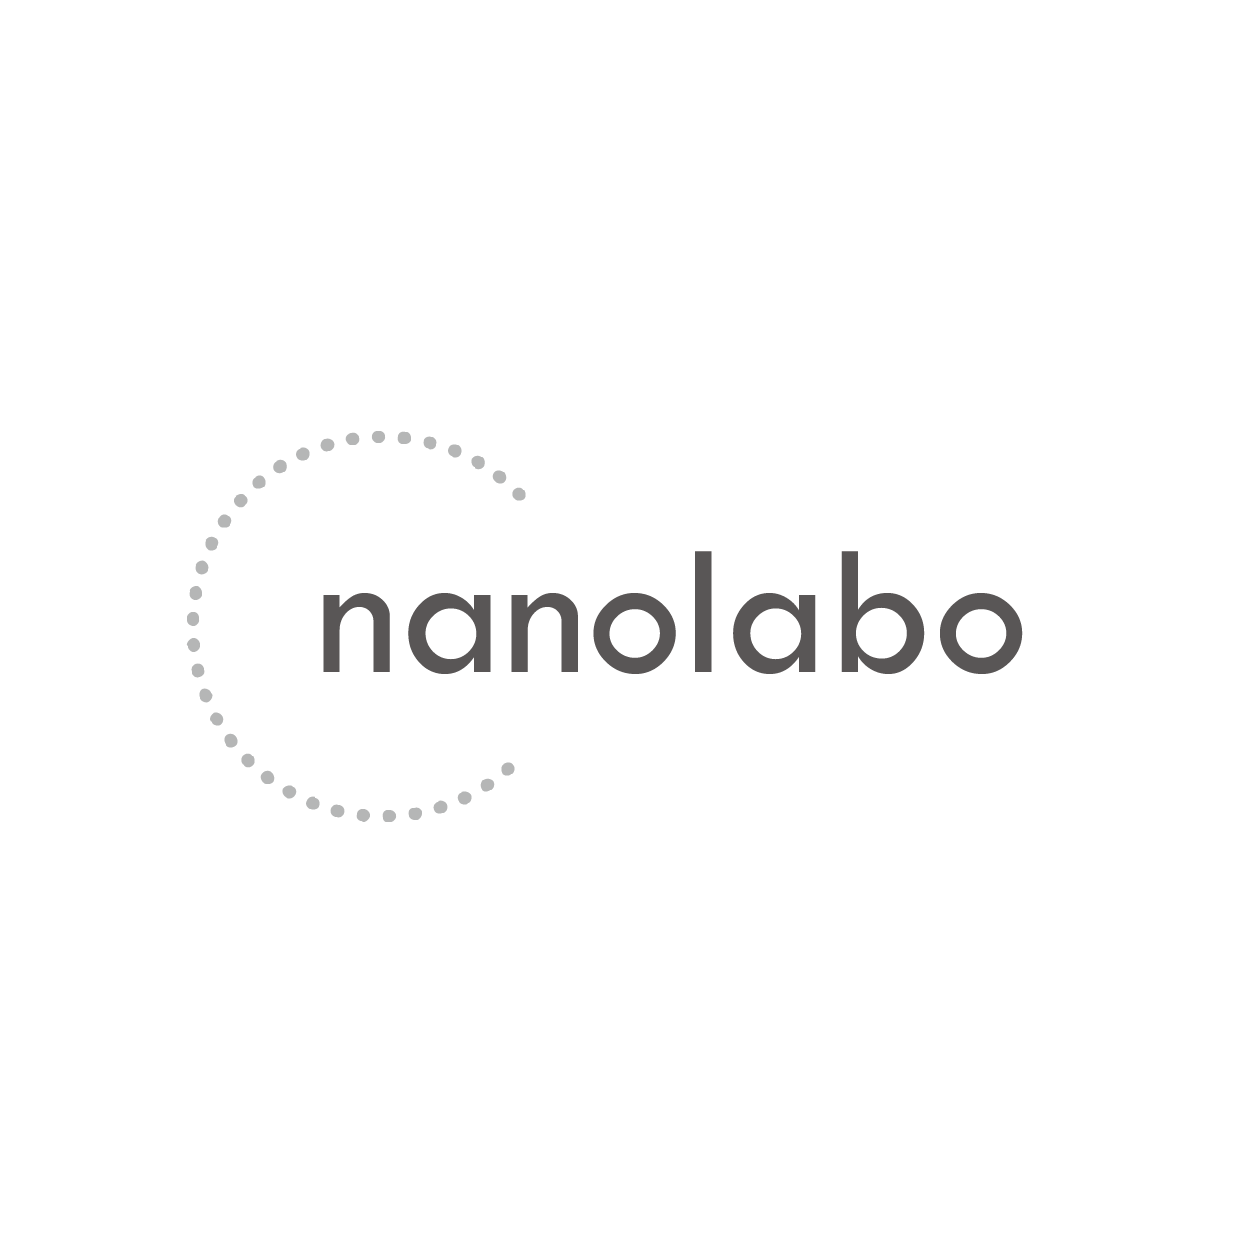 nanolabo